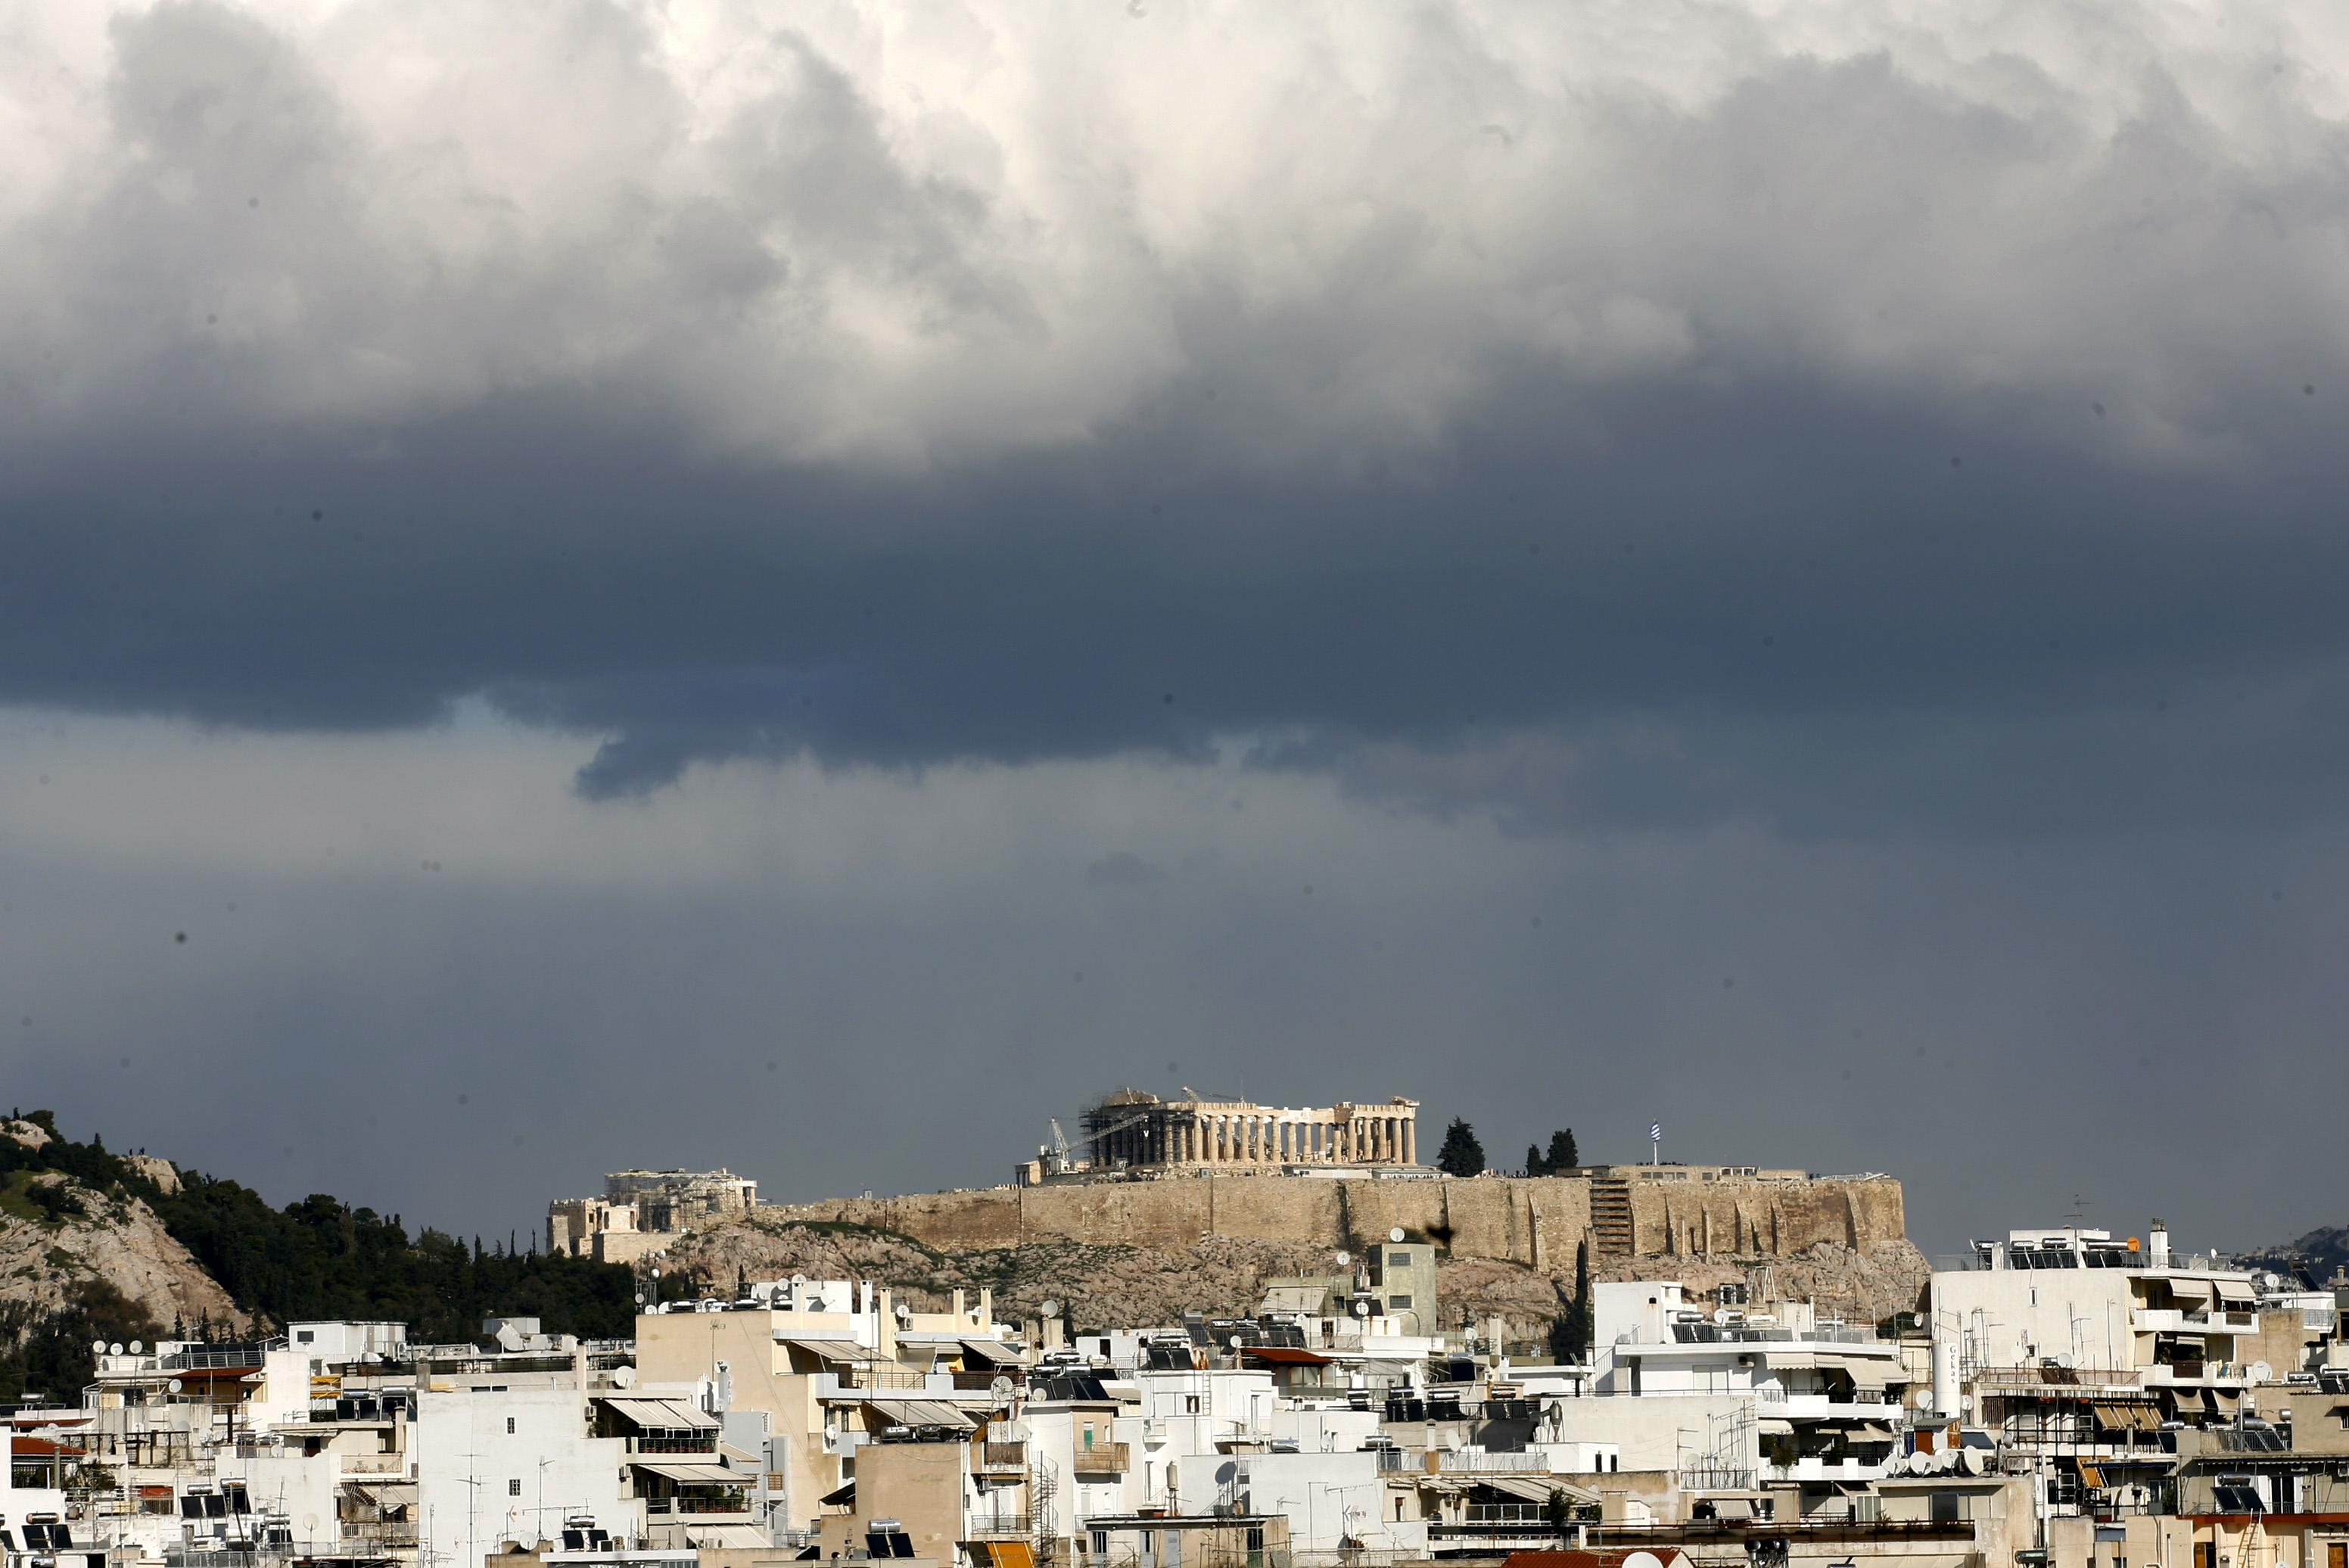 ELSTAT releases data on Greece’s wealthiest, poorest regions